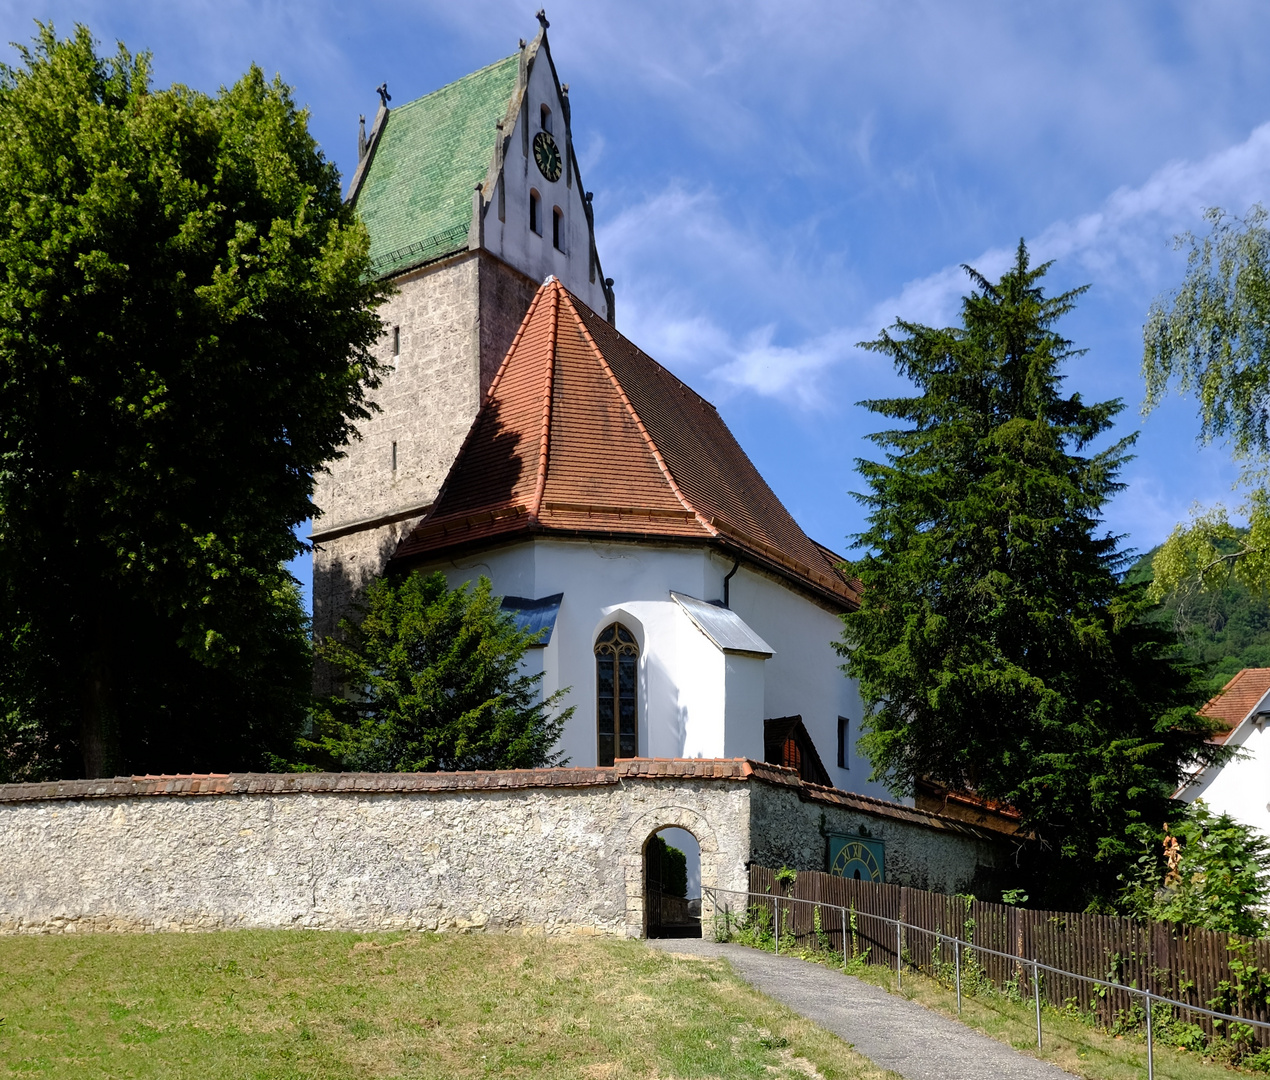 romanische St. Martinskirche, Oberlenningen